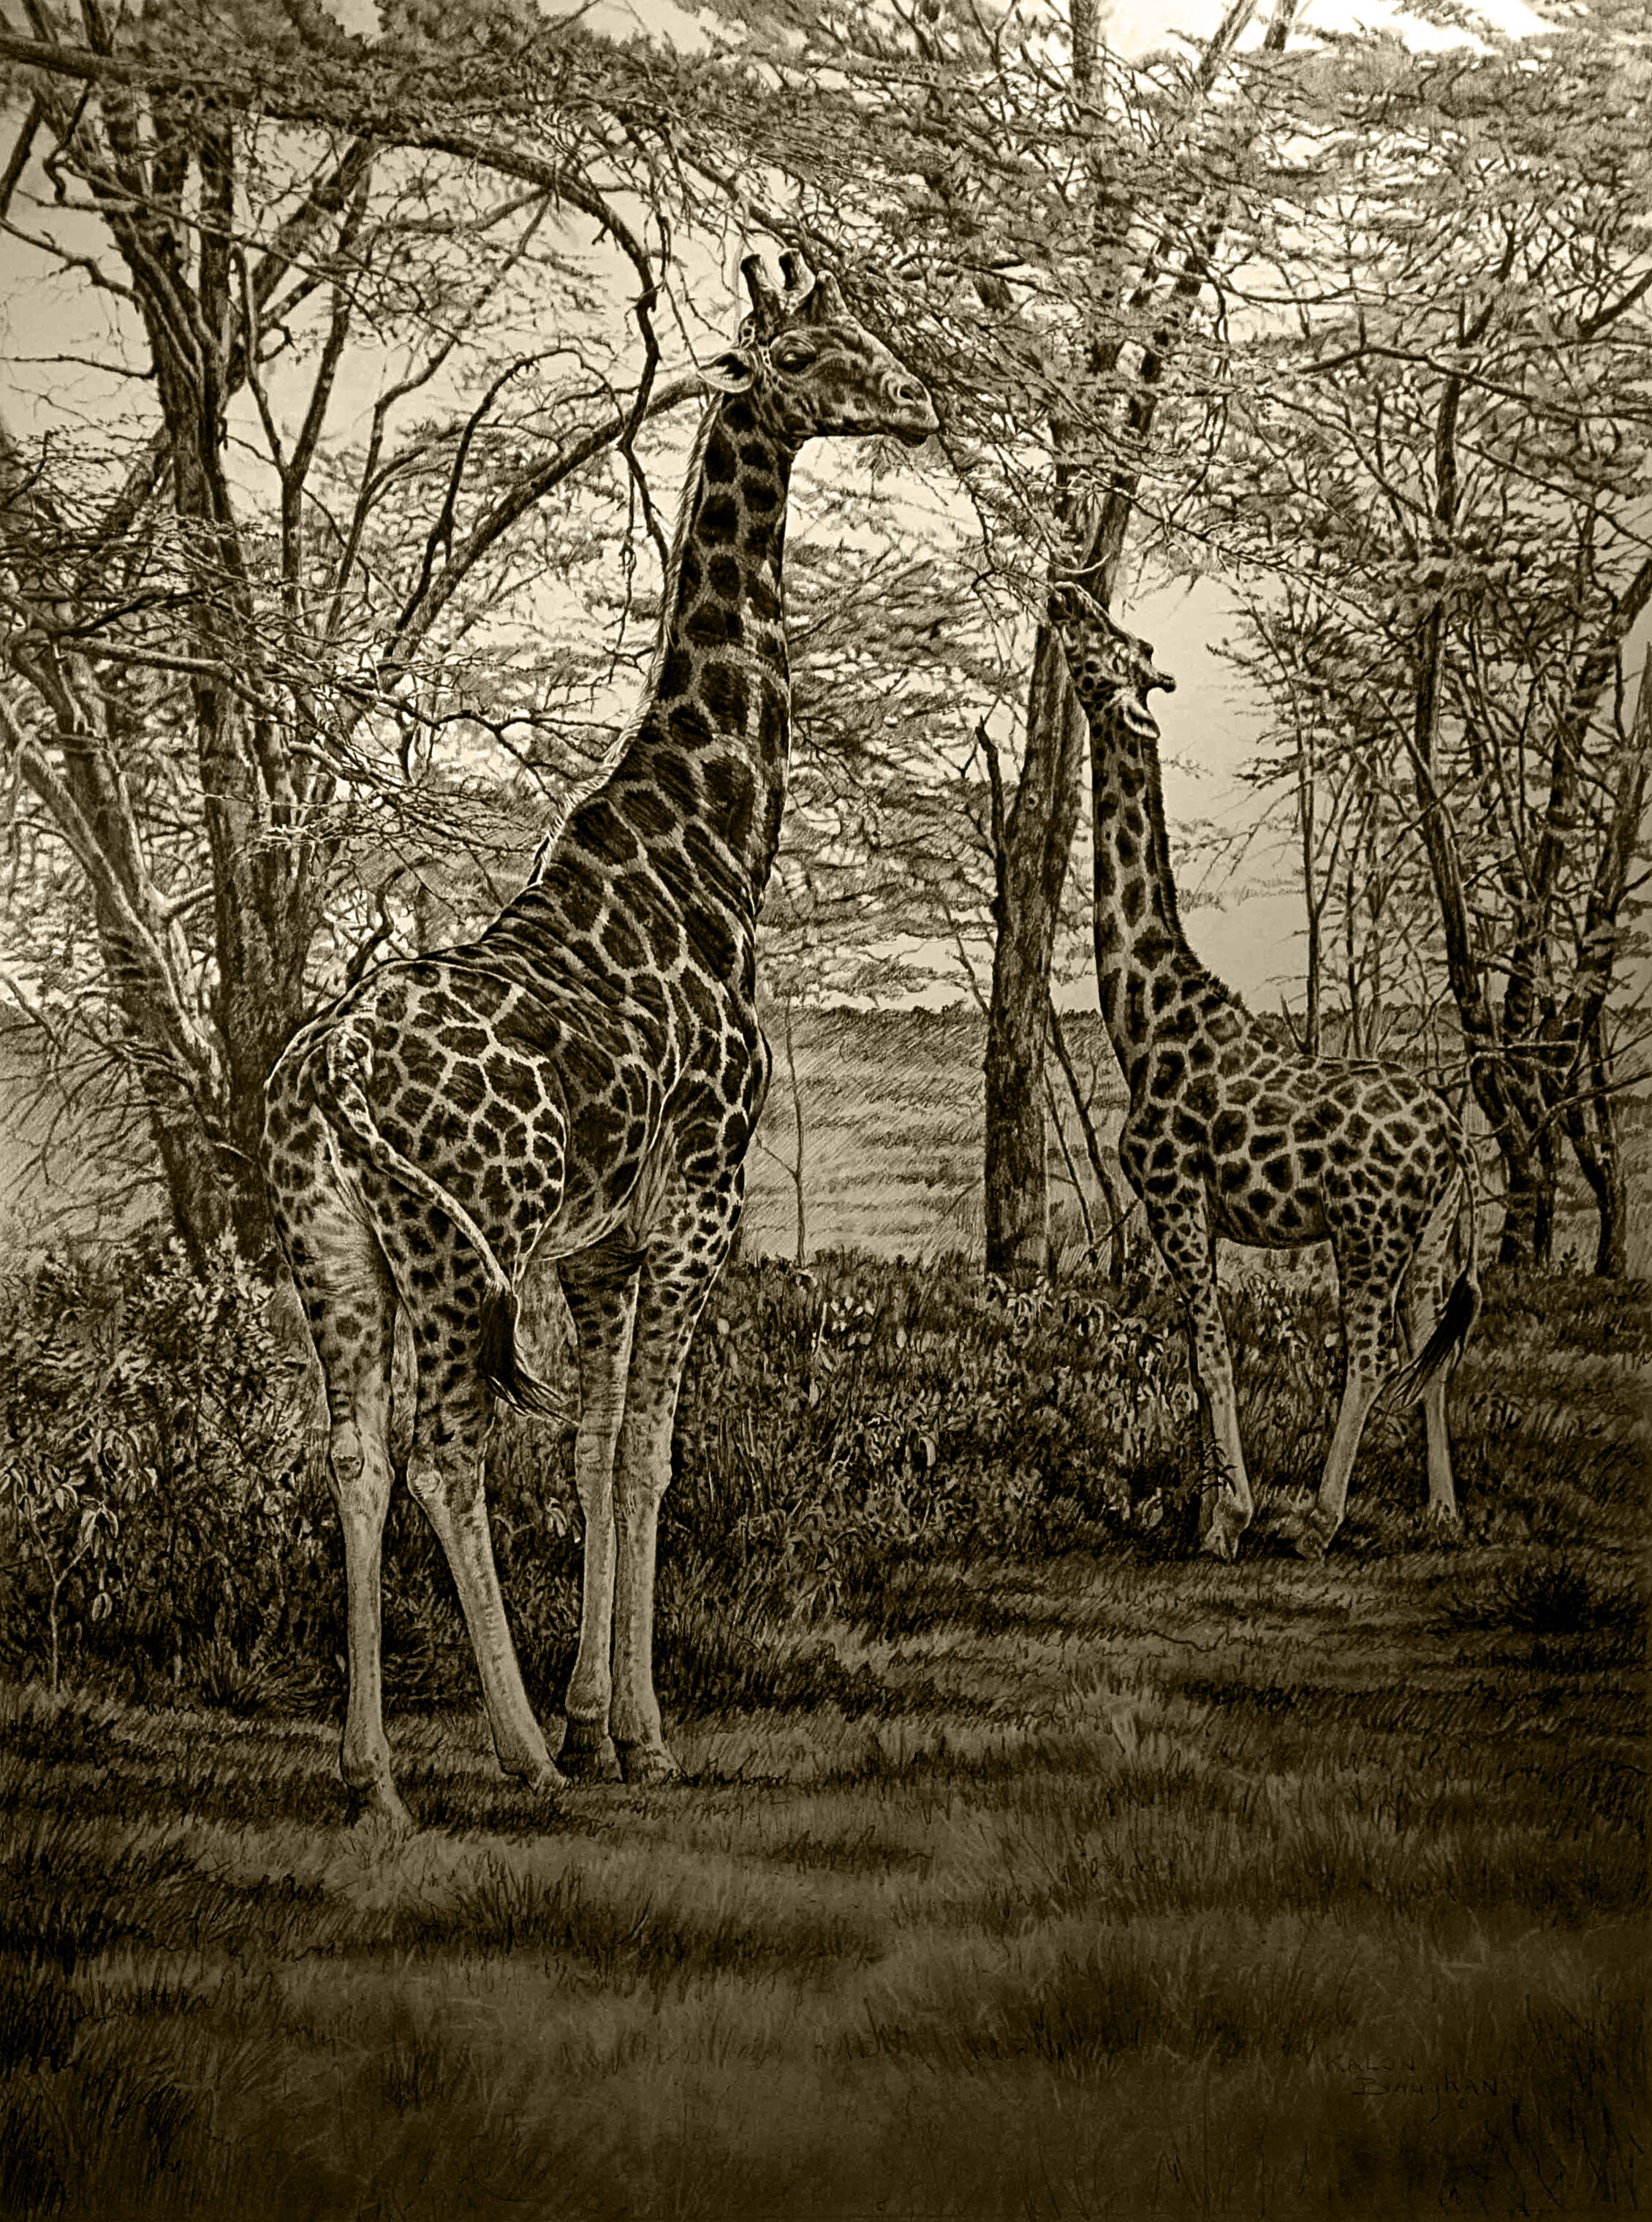 giraffe-drawing-jan-2010.jpg